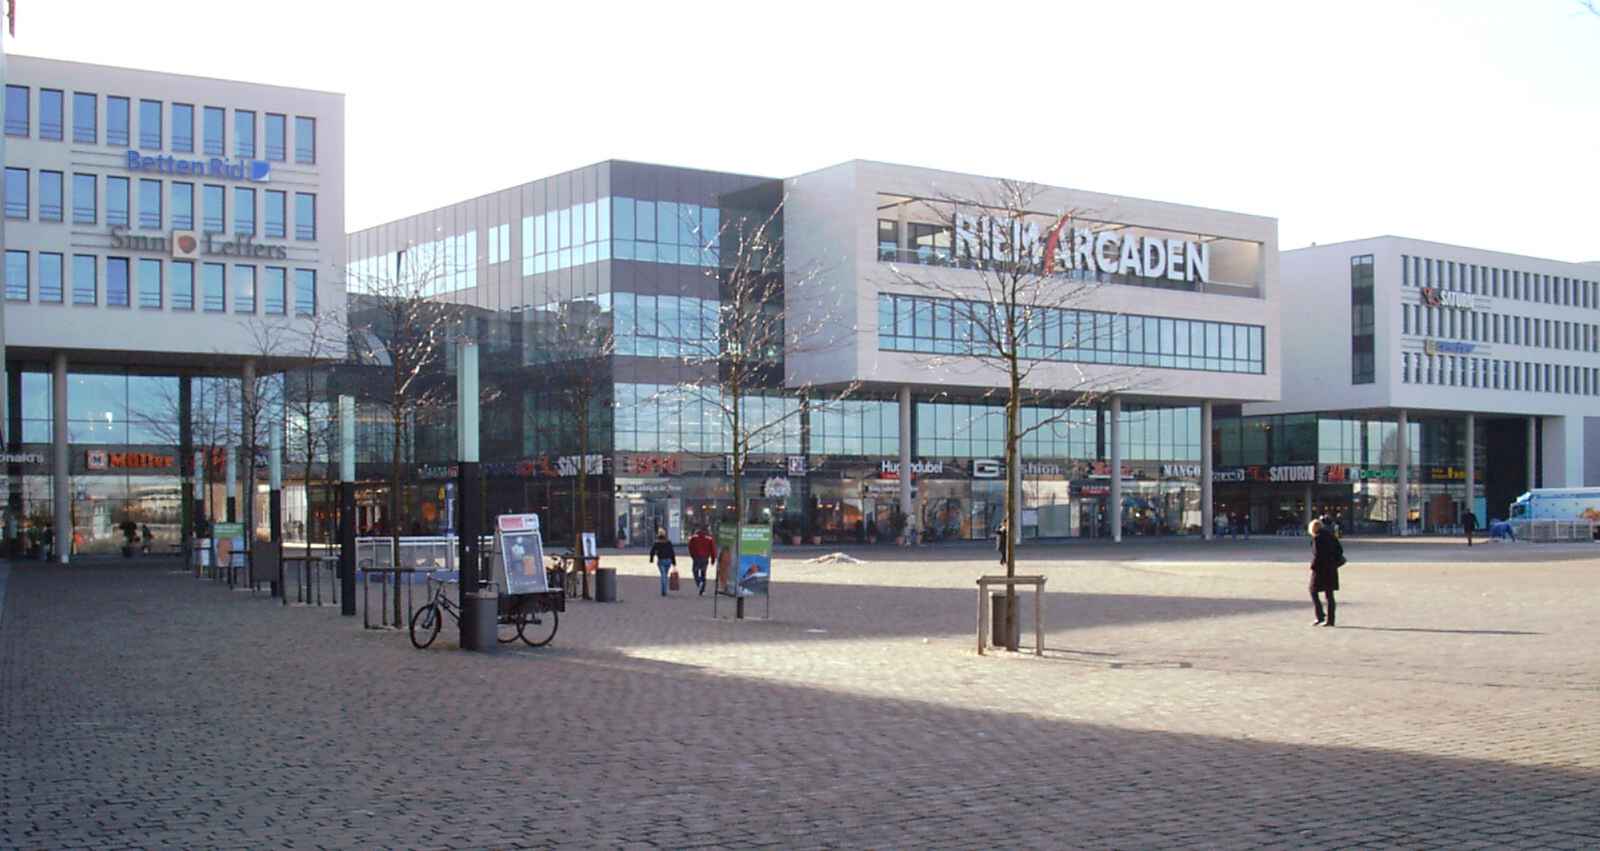 Einkaufszentrum Riem Arcaden